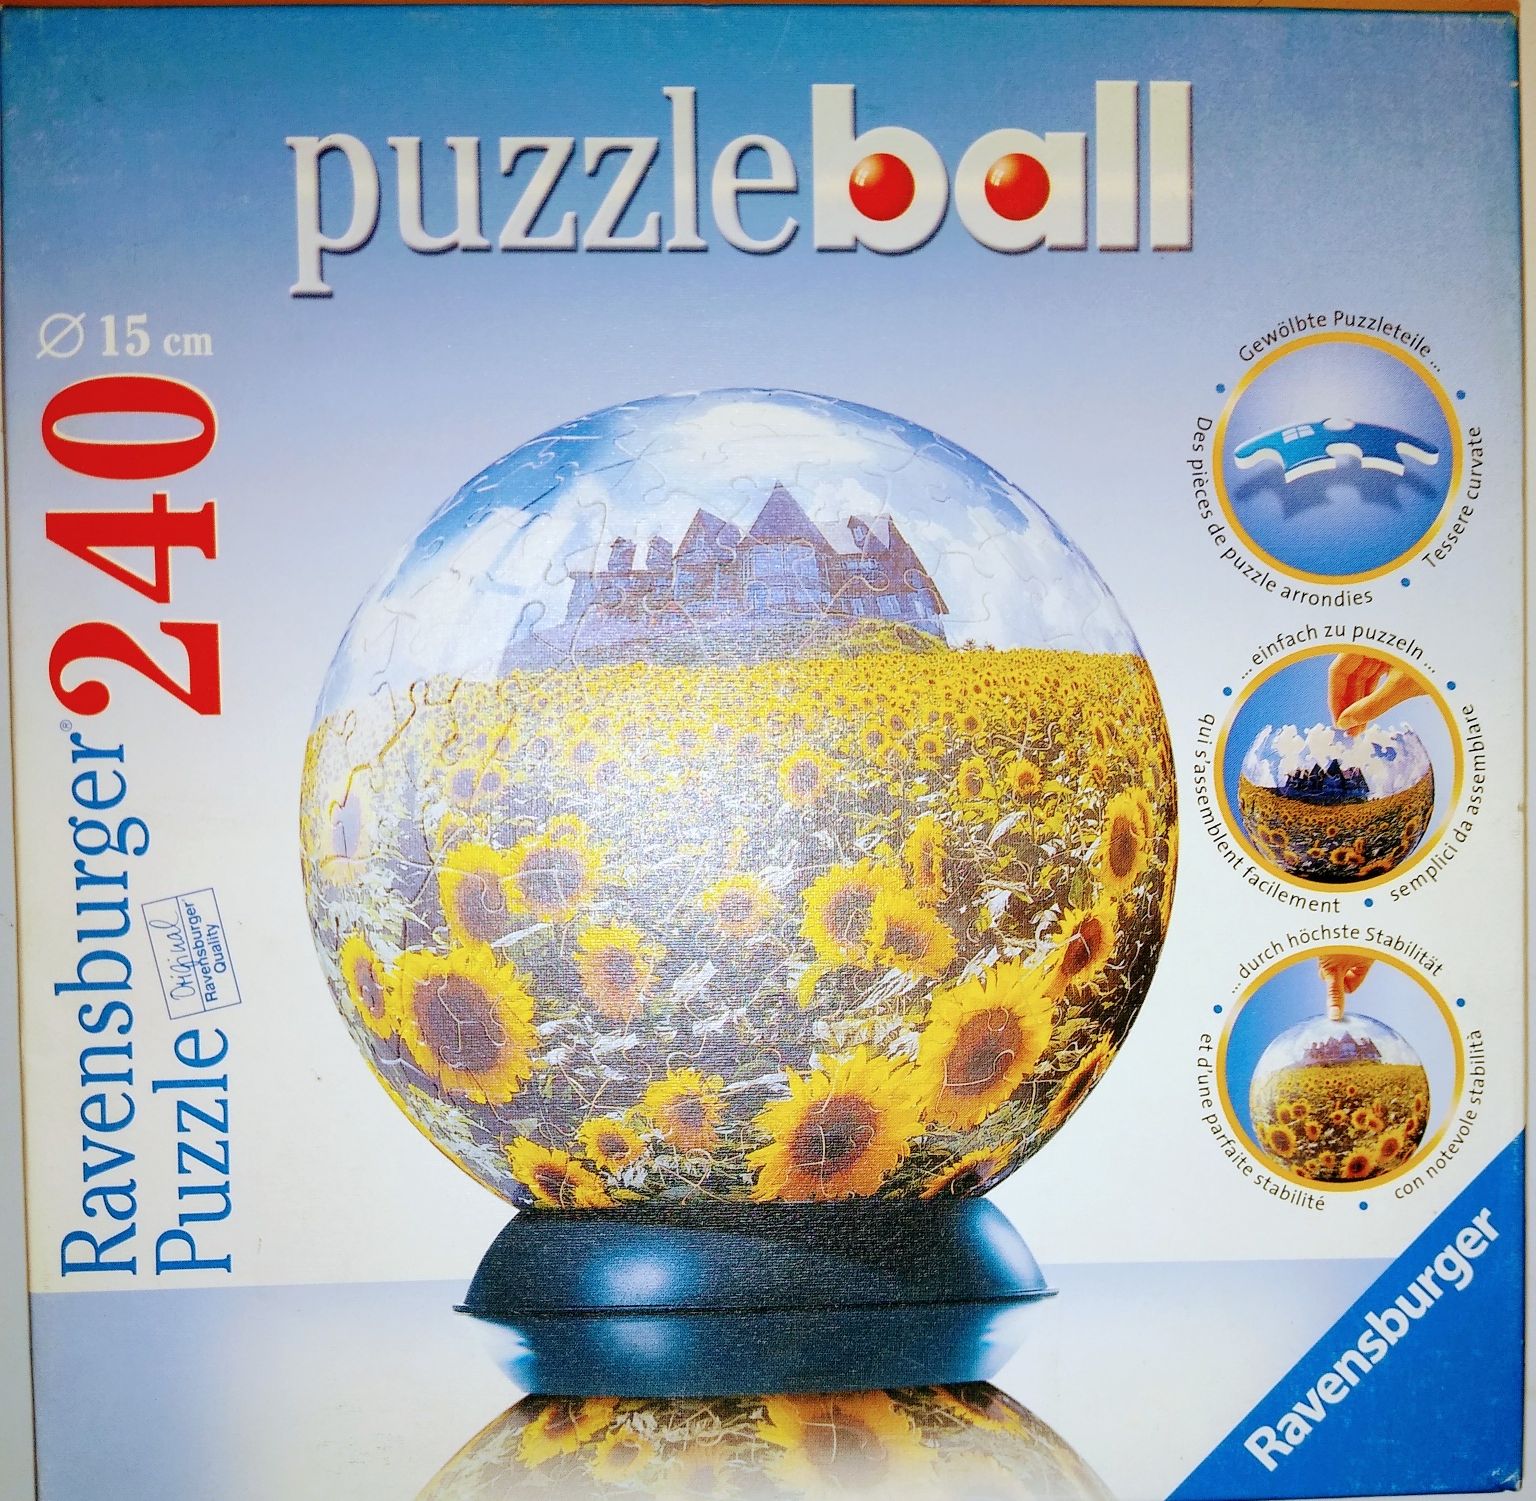 Słoneczniki  Ravensburger Puzzle Ball 240 elemtów  prezent  na dzień d